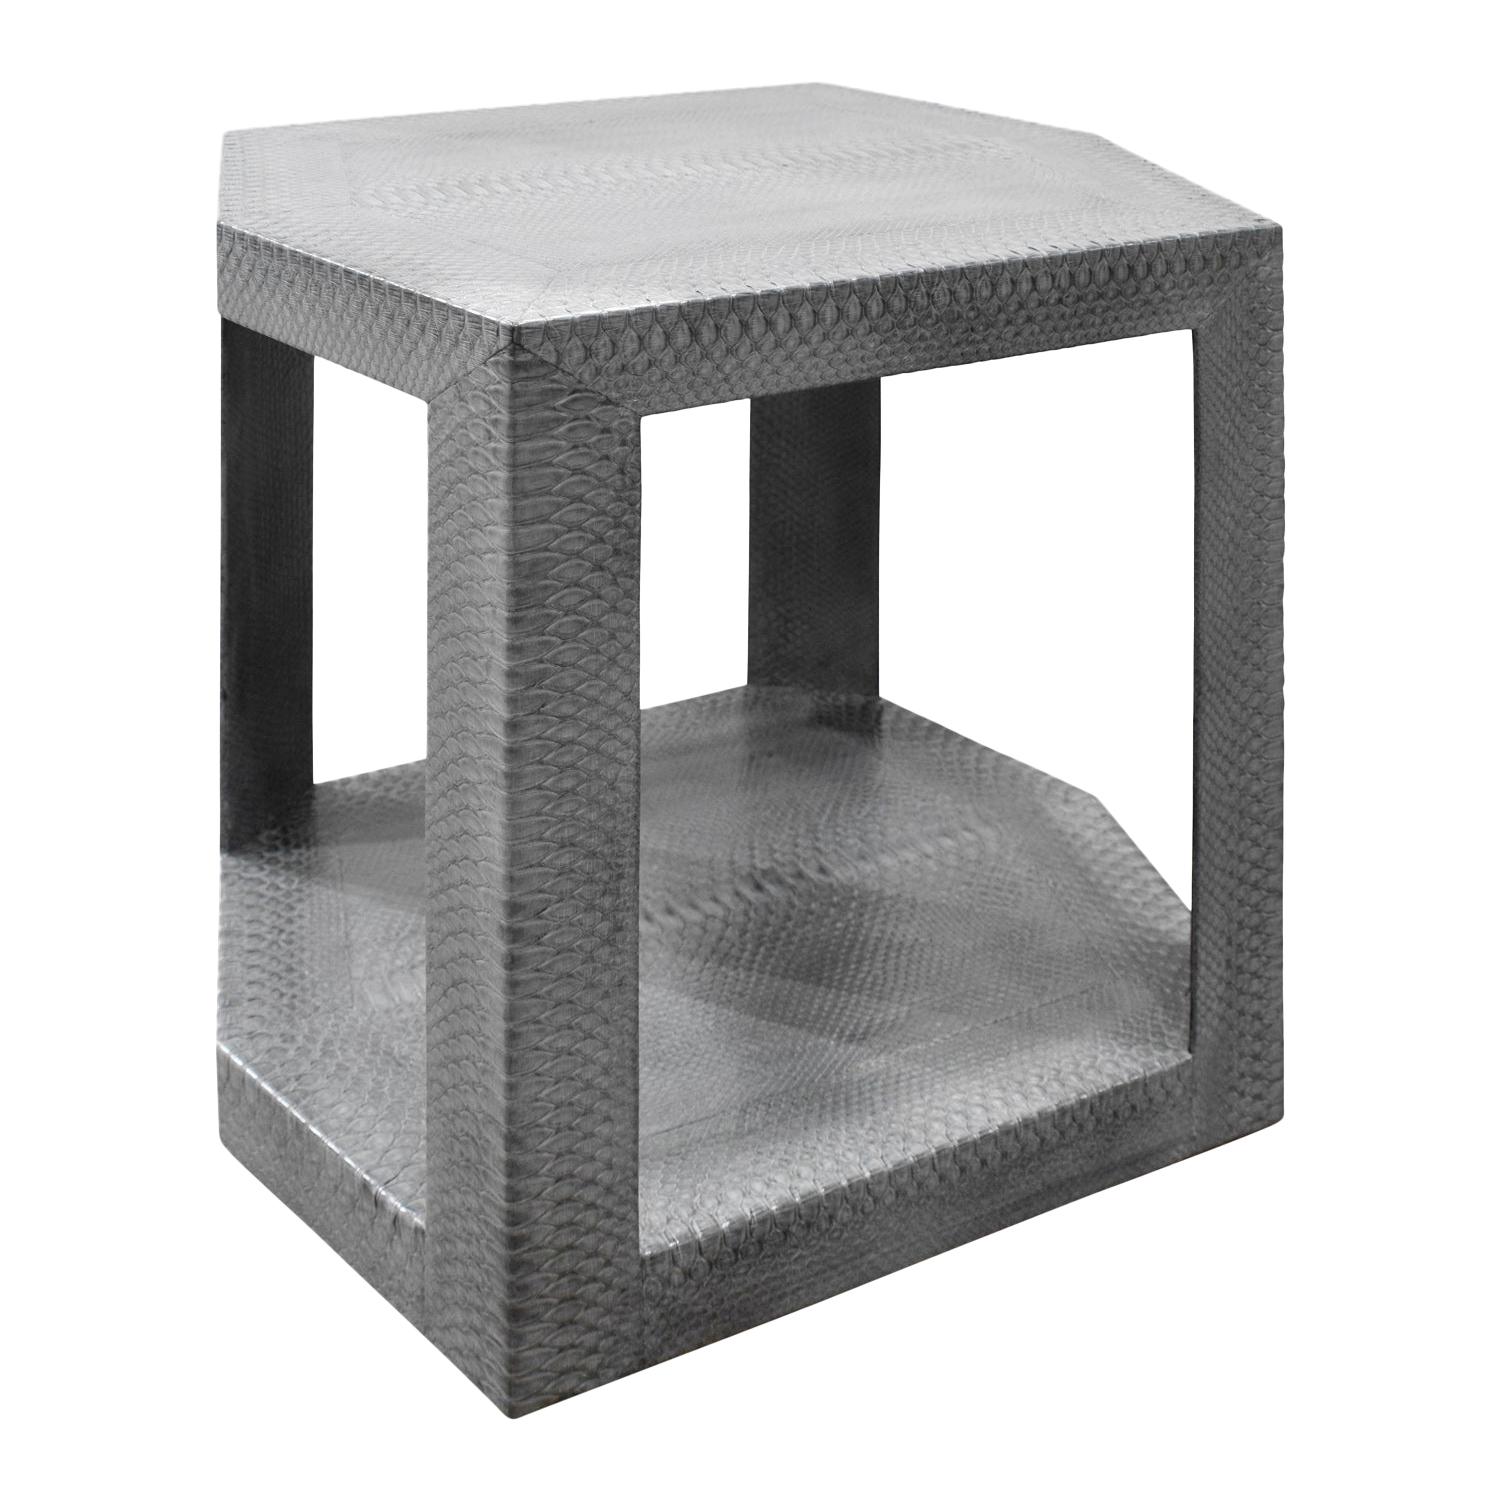 Karl Springer 2 Tier Hexagonal Side Table in Gray Cobra, 1985, 'Signed'